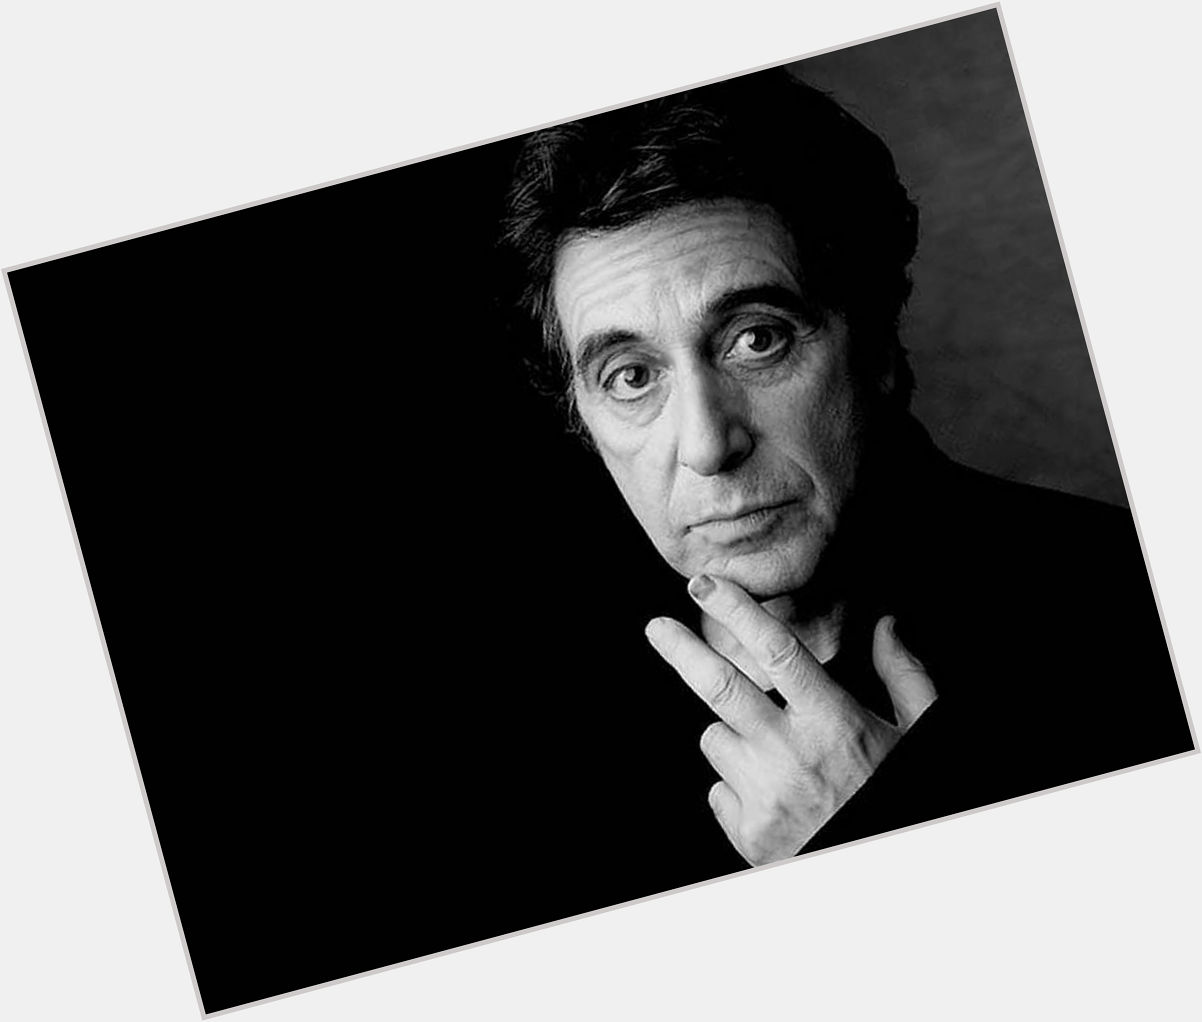 Happy birthday, Al Pacino. 